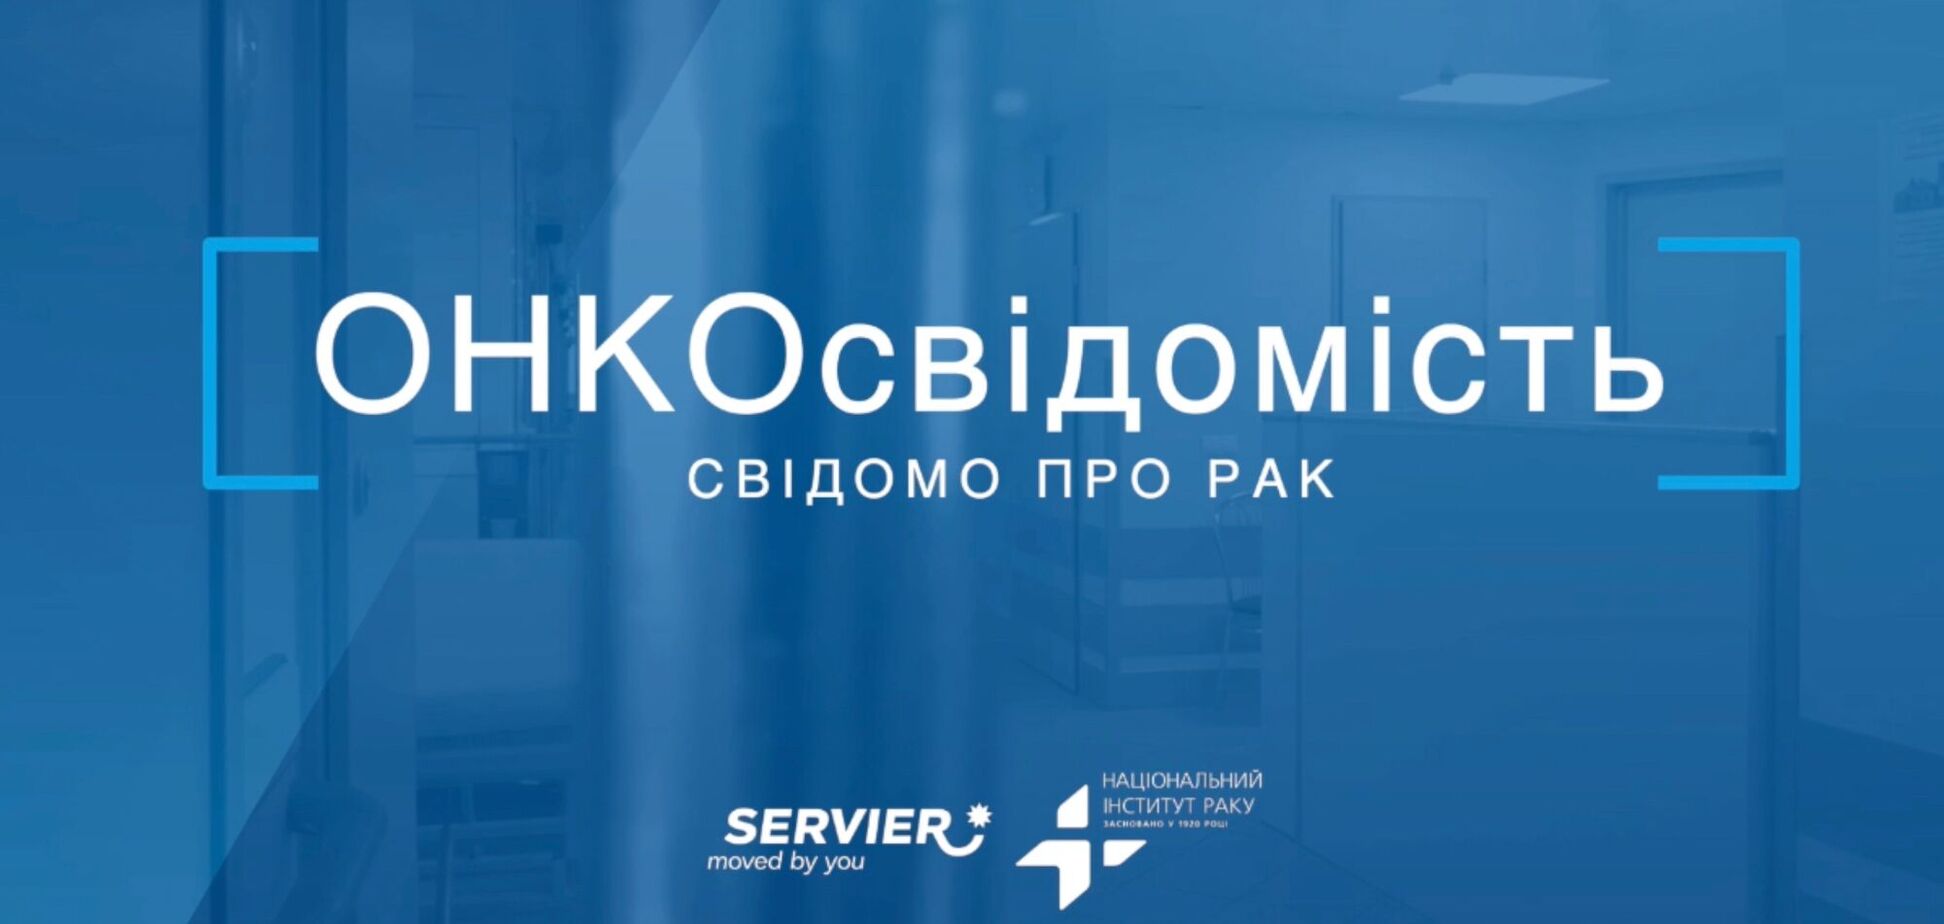 Украинцев будут учить онкосознания в YouTube: Национальный институт рака запустил всеукраинский информ-проект